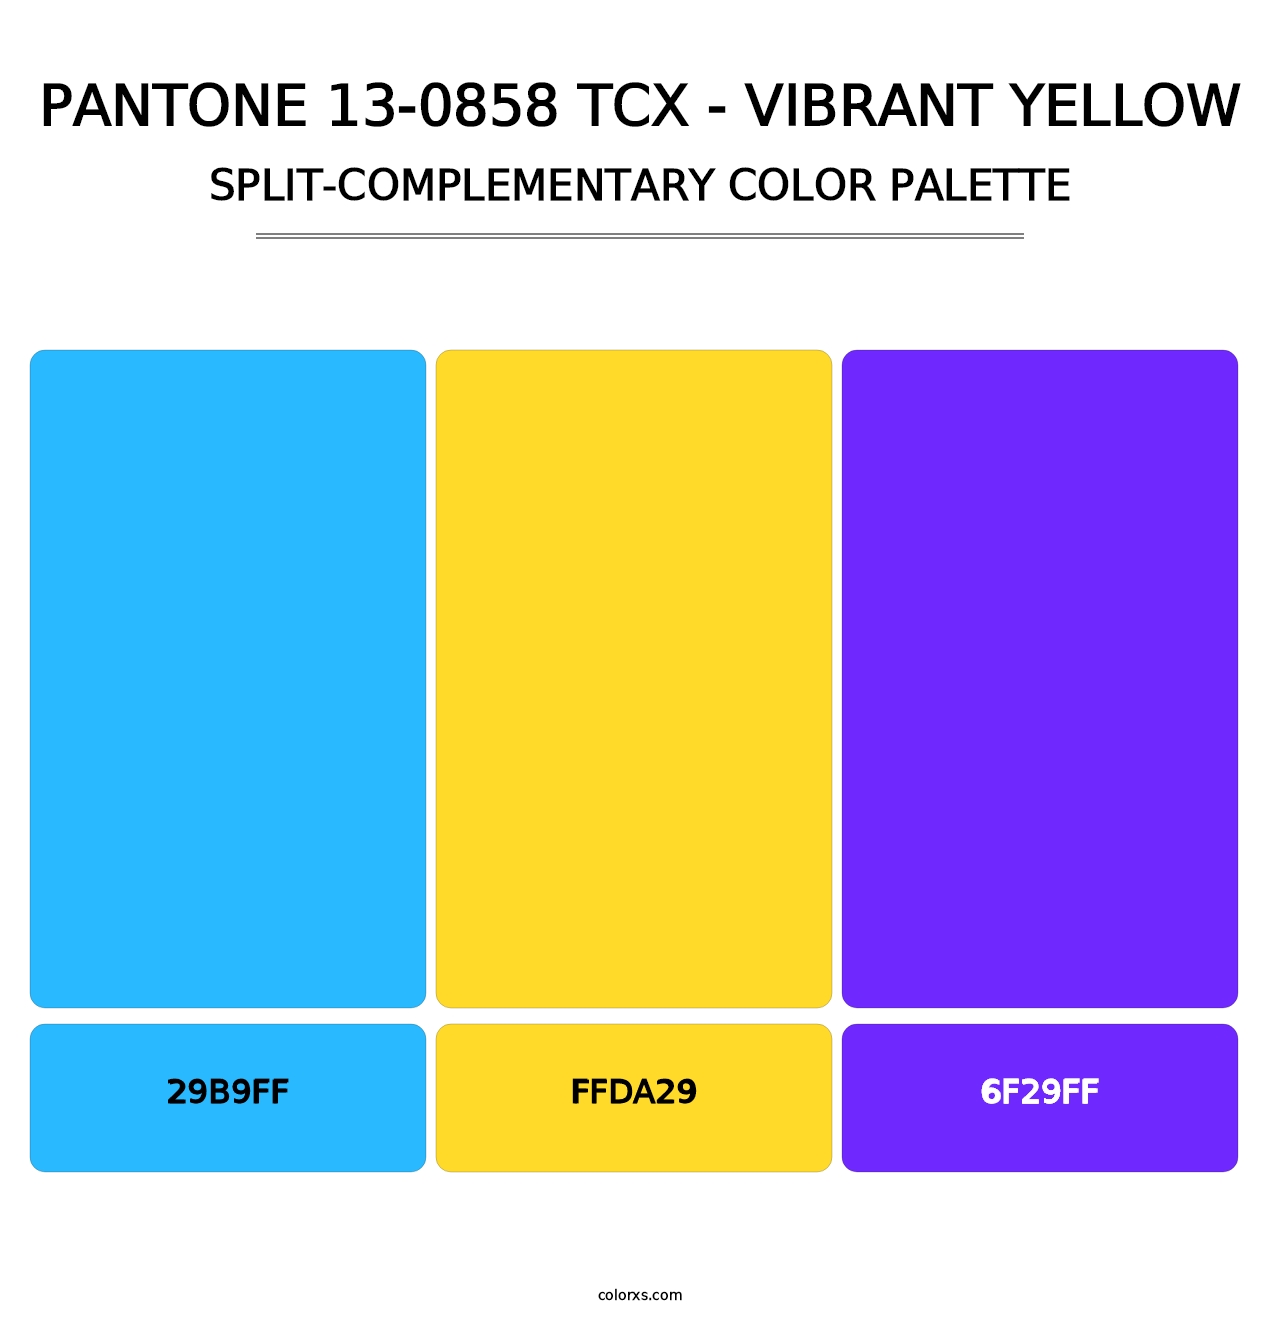 PANTONE 13-0858 TCX - Vibrant Yellow - Split-Complementary Color Palette